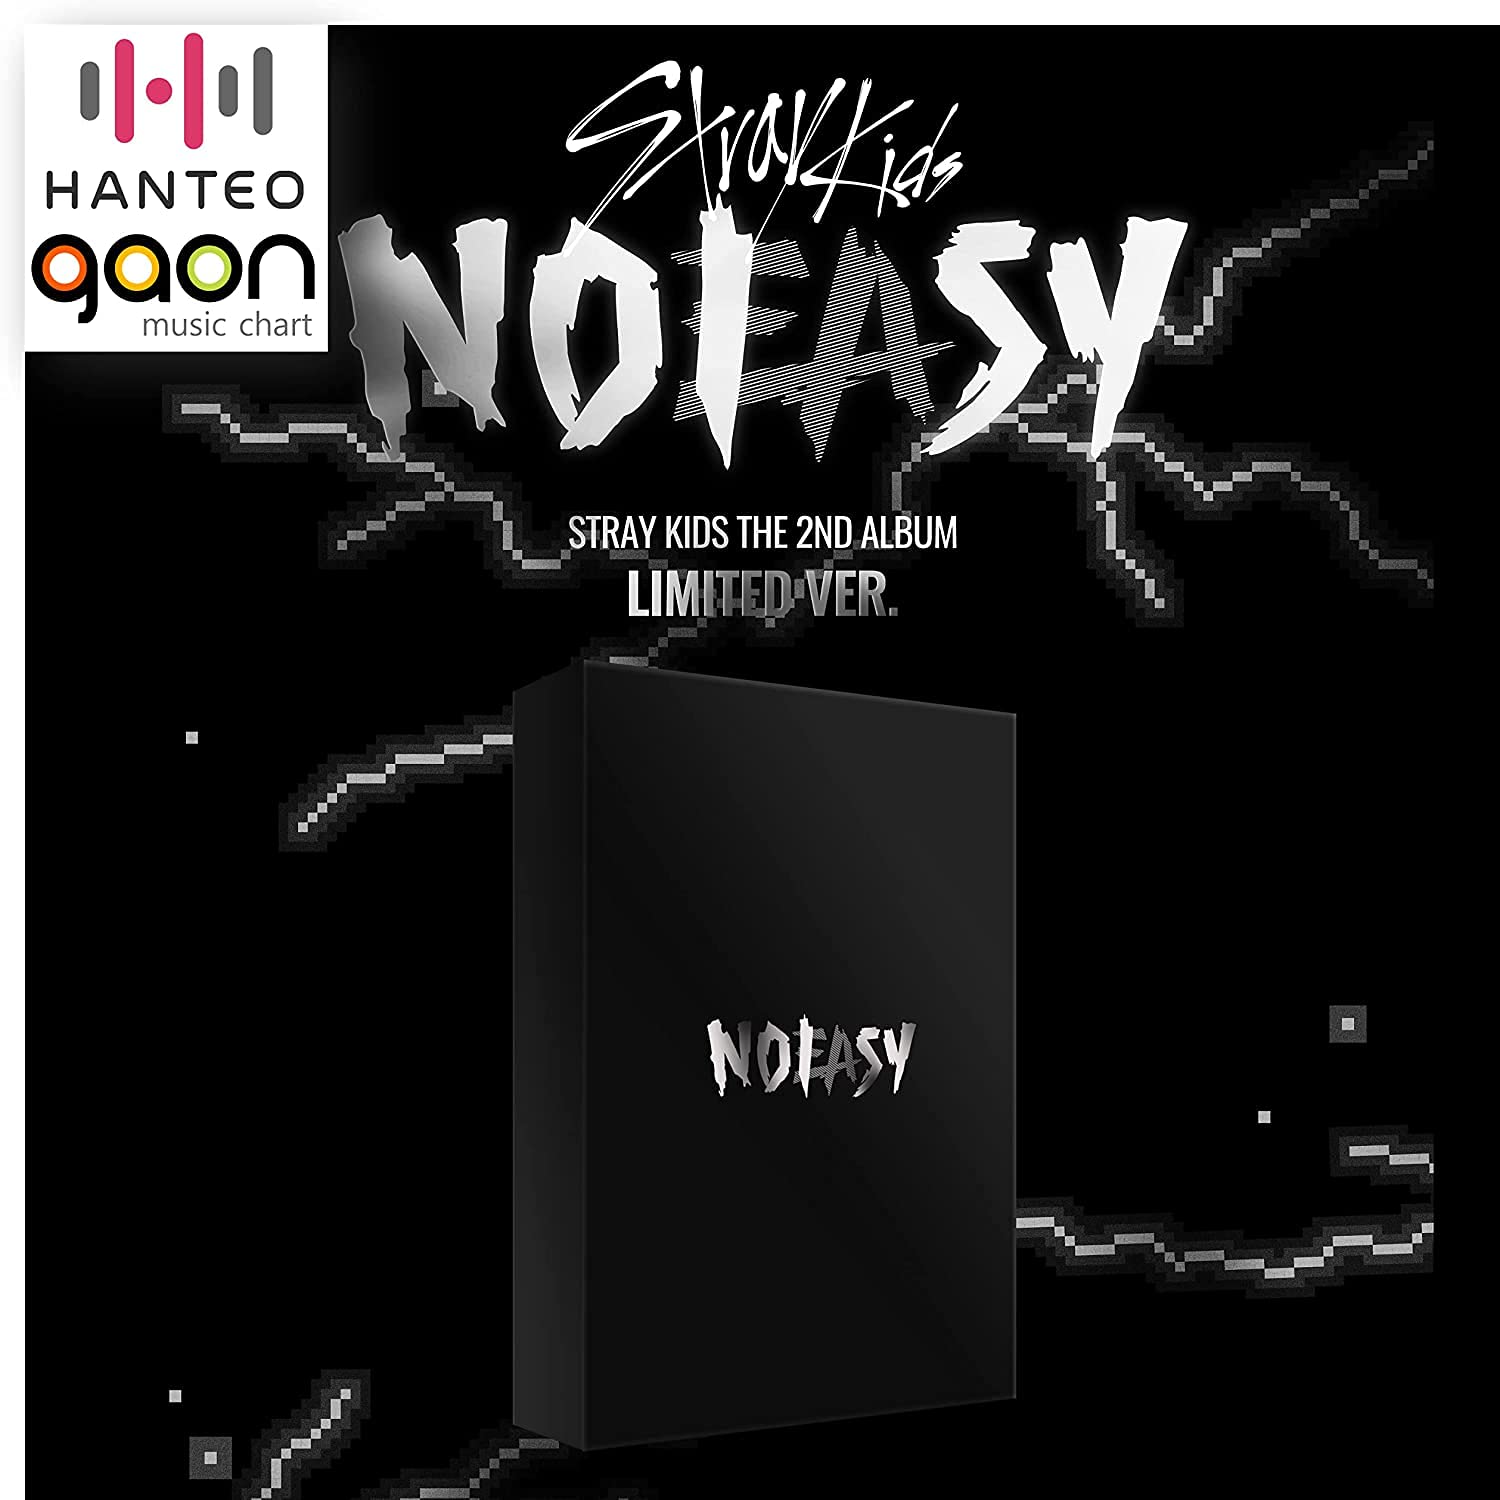 Stray Kids – NOEASY [Limited Ver.] (2. Album) Album + Kulturkoreanisches Geschenk (dekorative Aufkleber, Fotokarten)